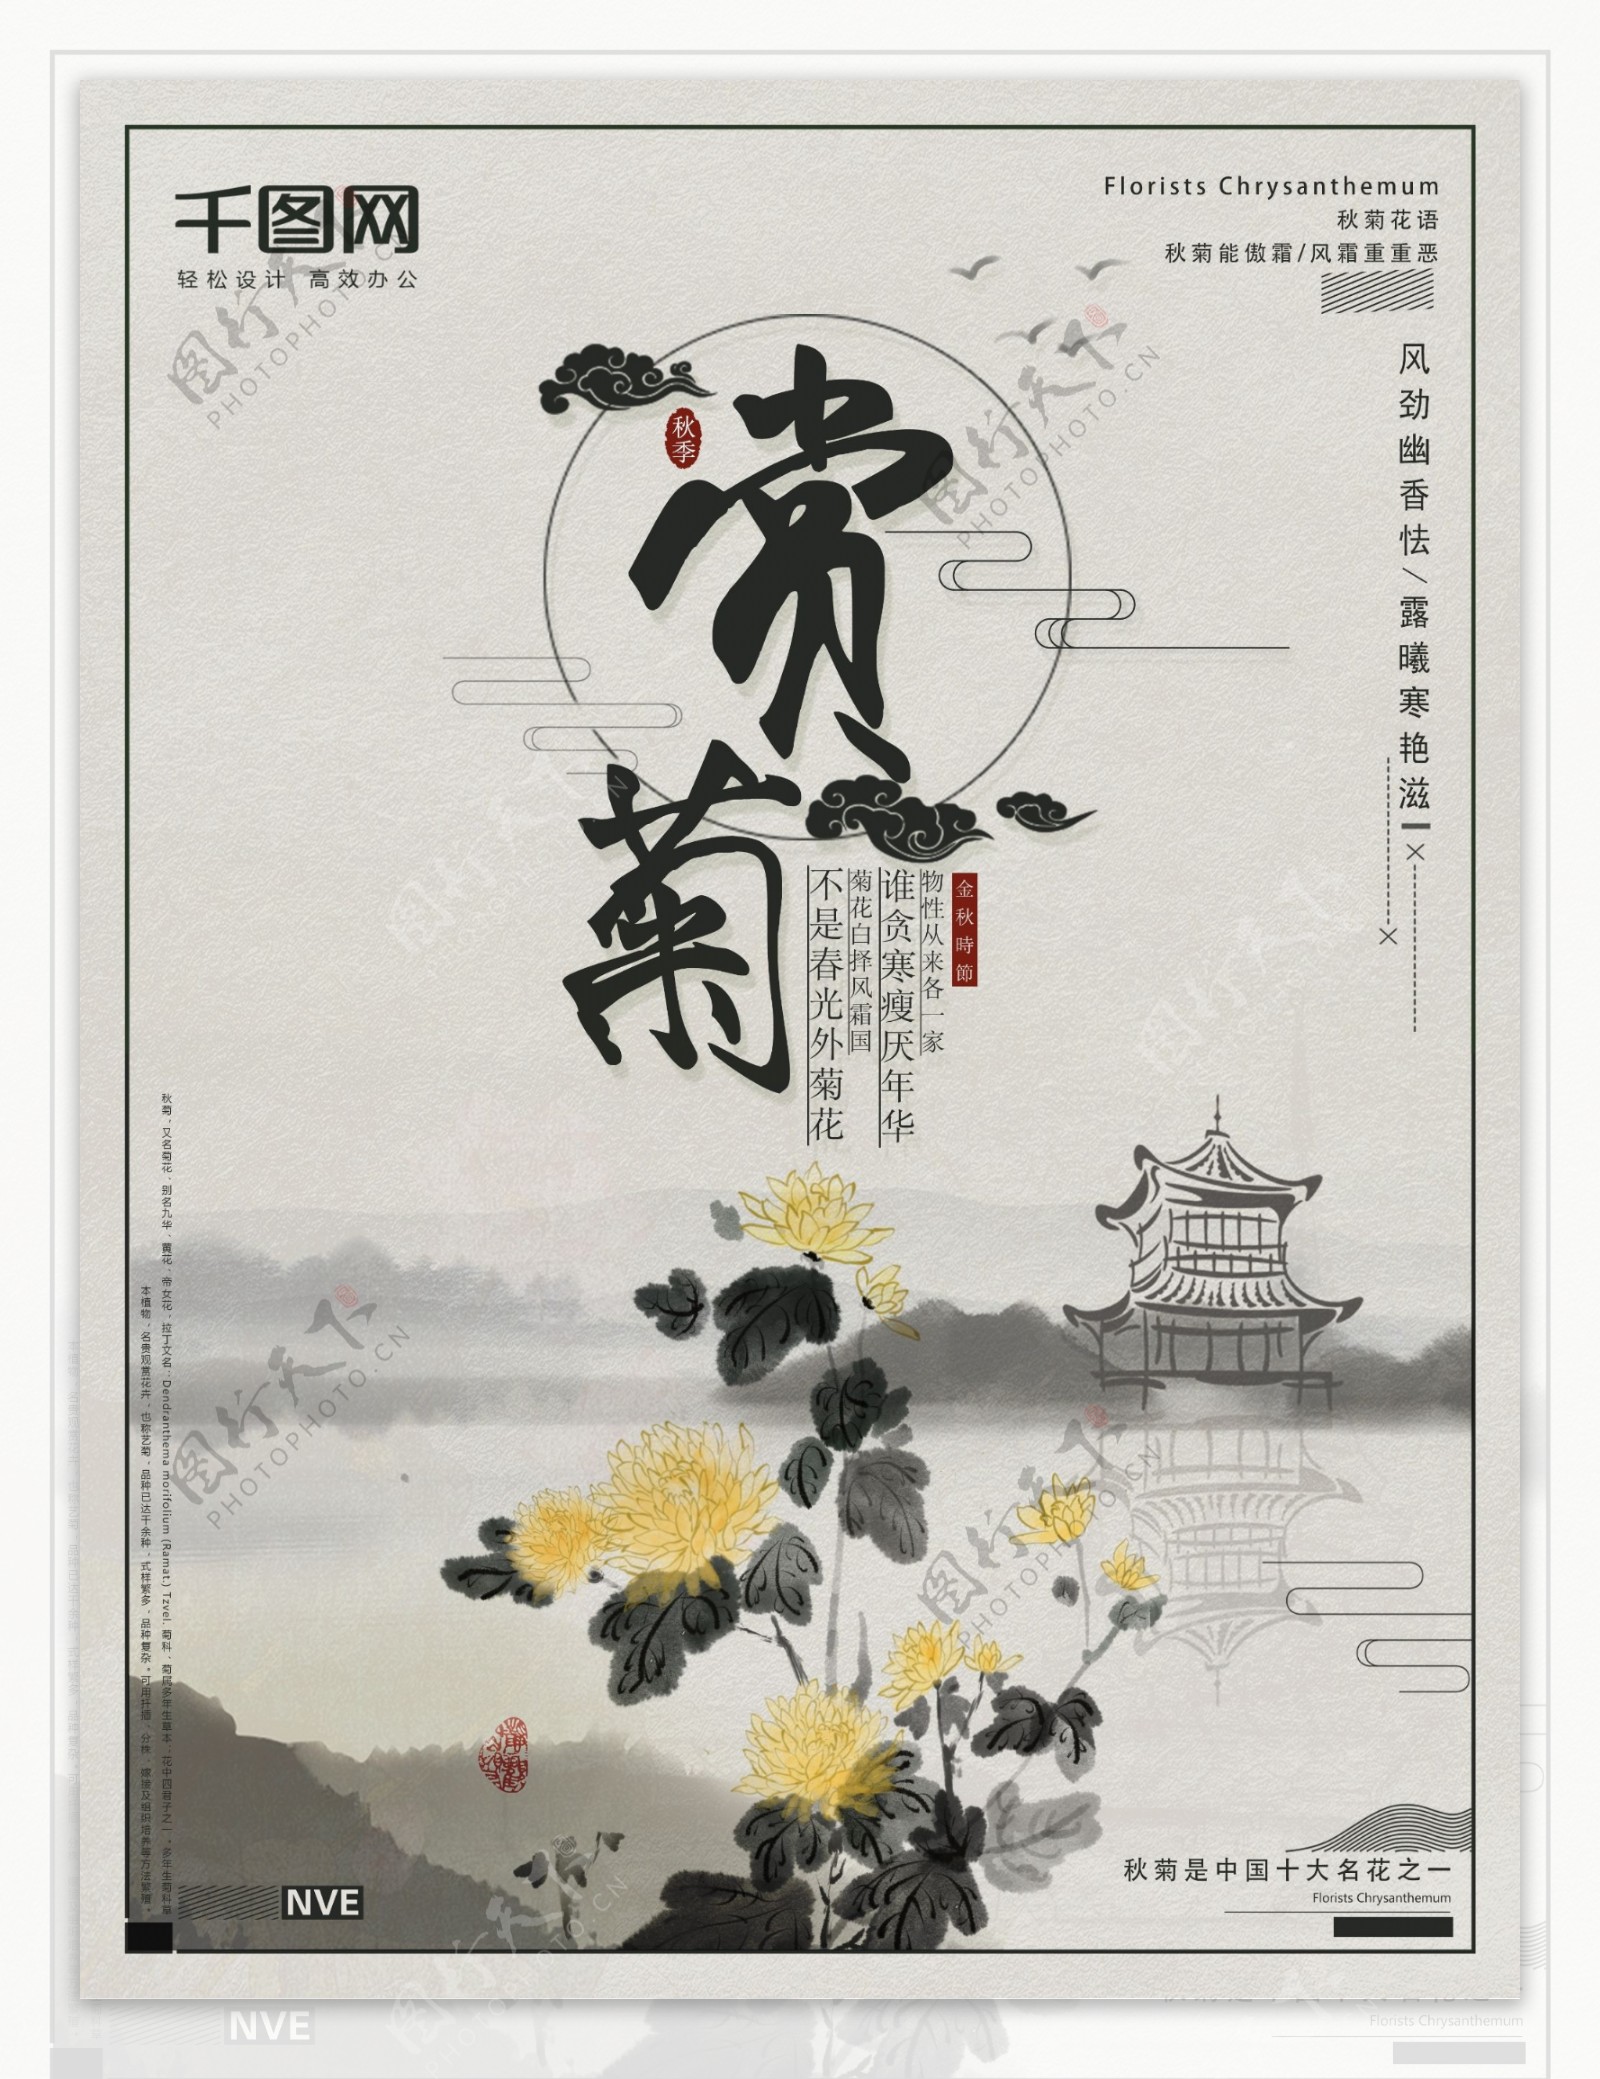 秋菊花语金秋赏菊中国风海报设计